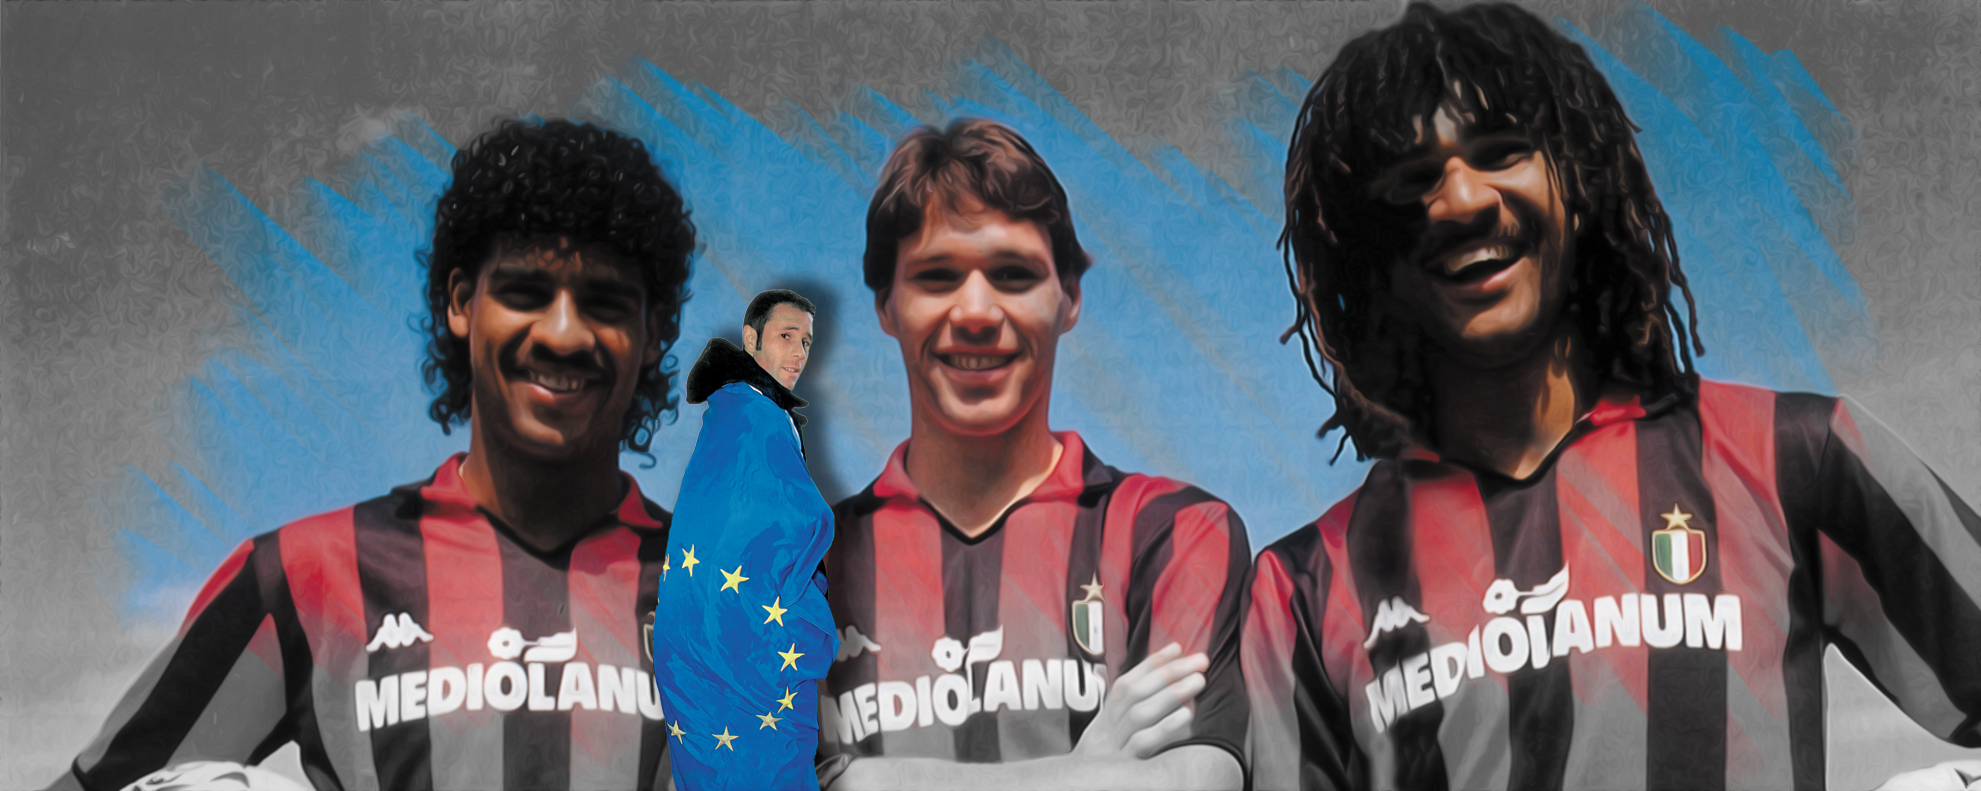 Rijkaard, Van Basten y Gullit en el Milan